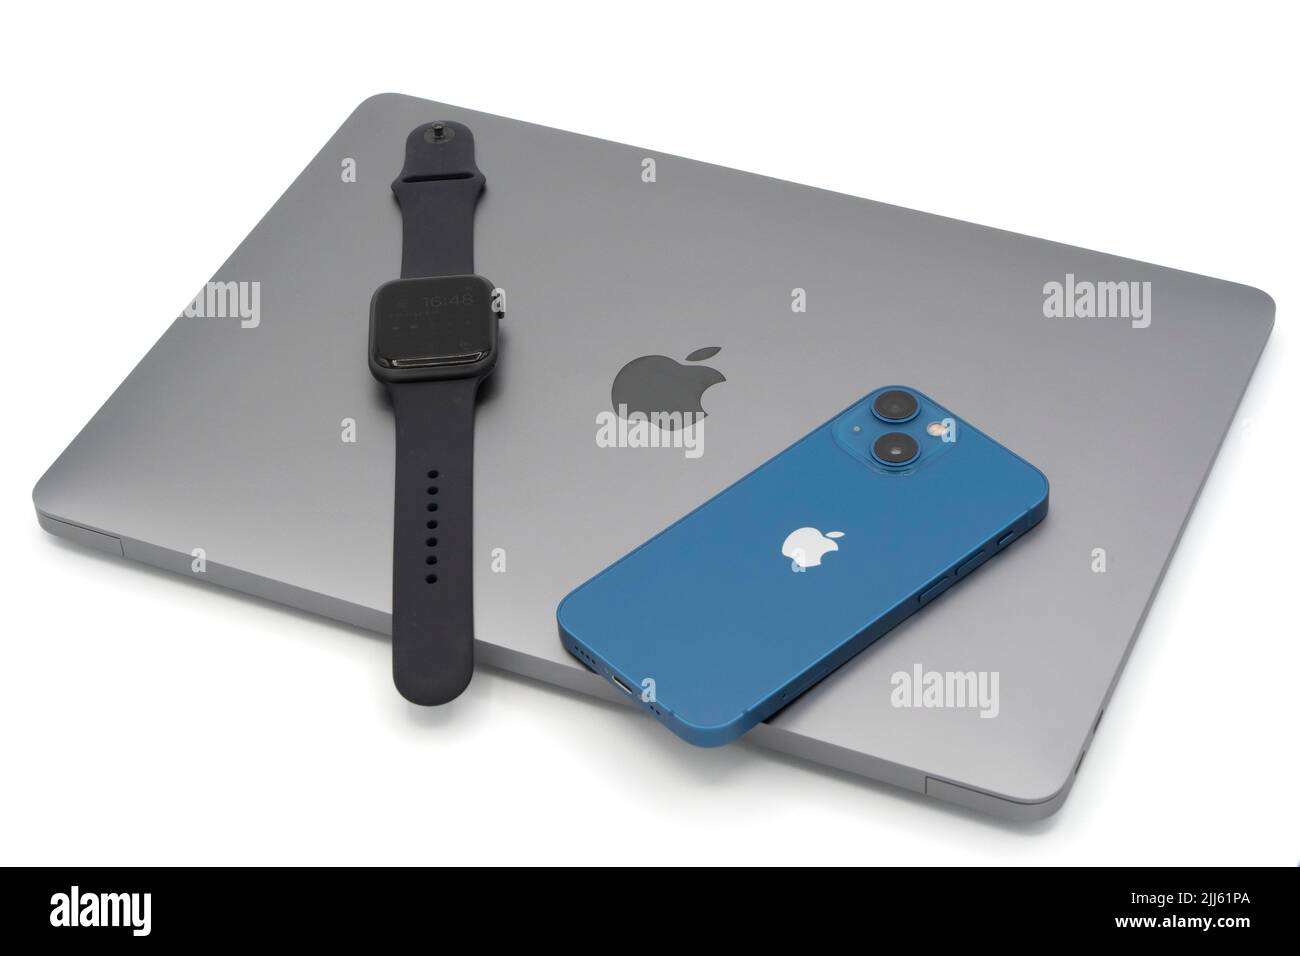 Productos Apple: Ordenador portátil MacBook Air, reloj inteligente Apple Watch y Apple iPhone 13 Mini Foto de stock